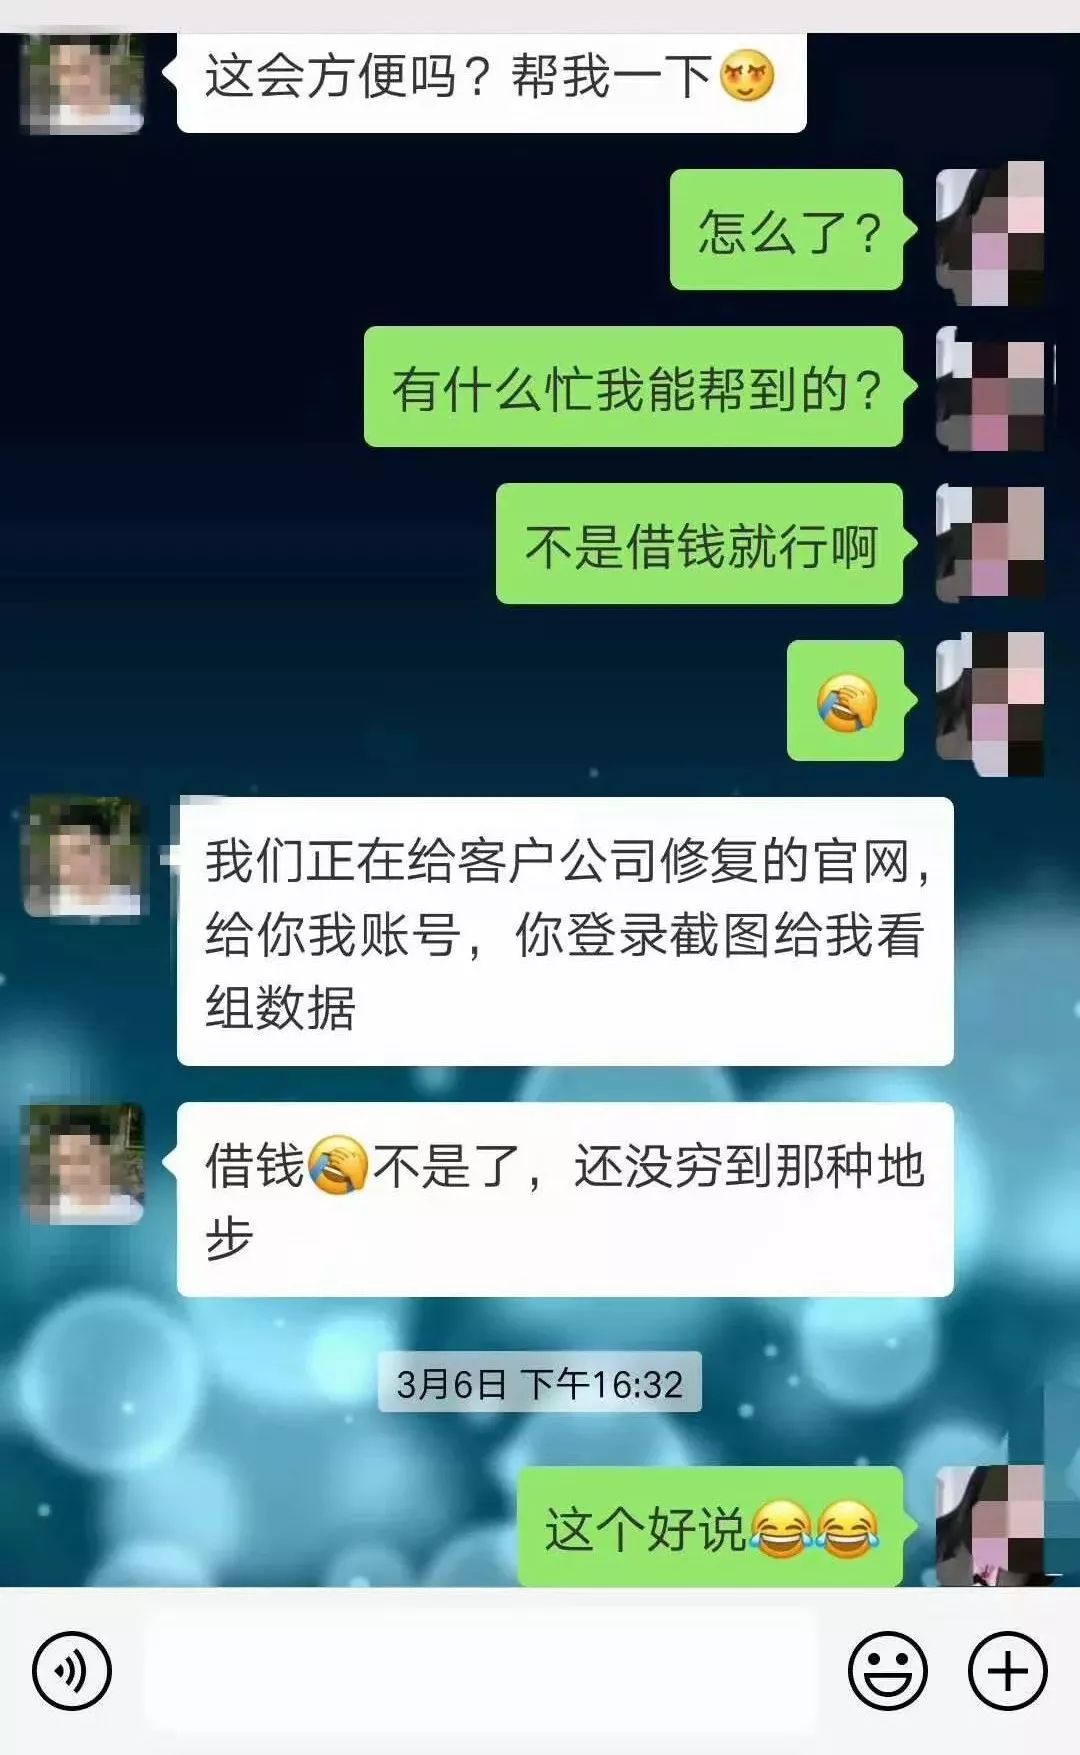 婚恋app结识优质it男,深圳女子十天被骗数万元,聊天记录曝光